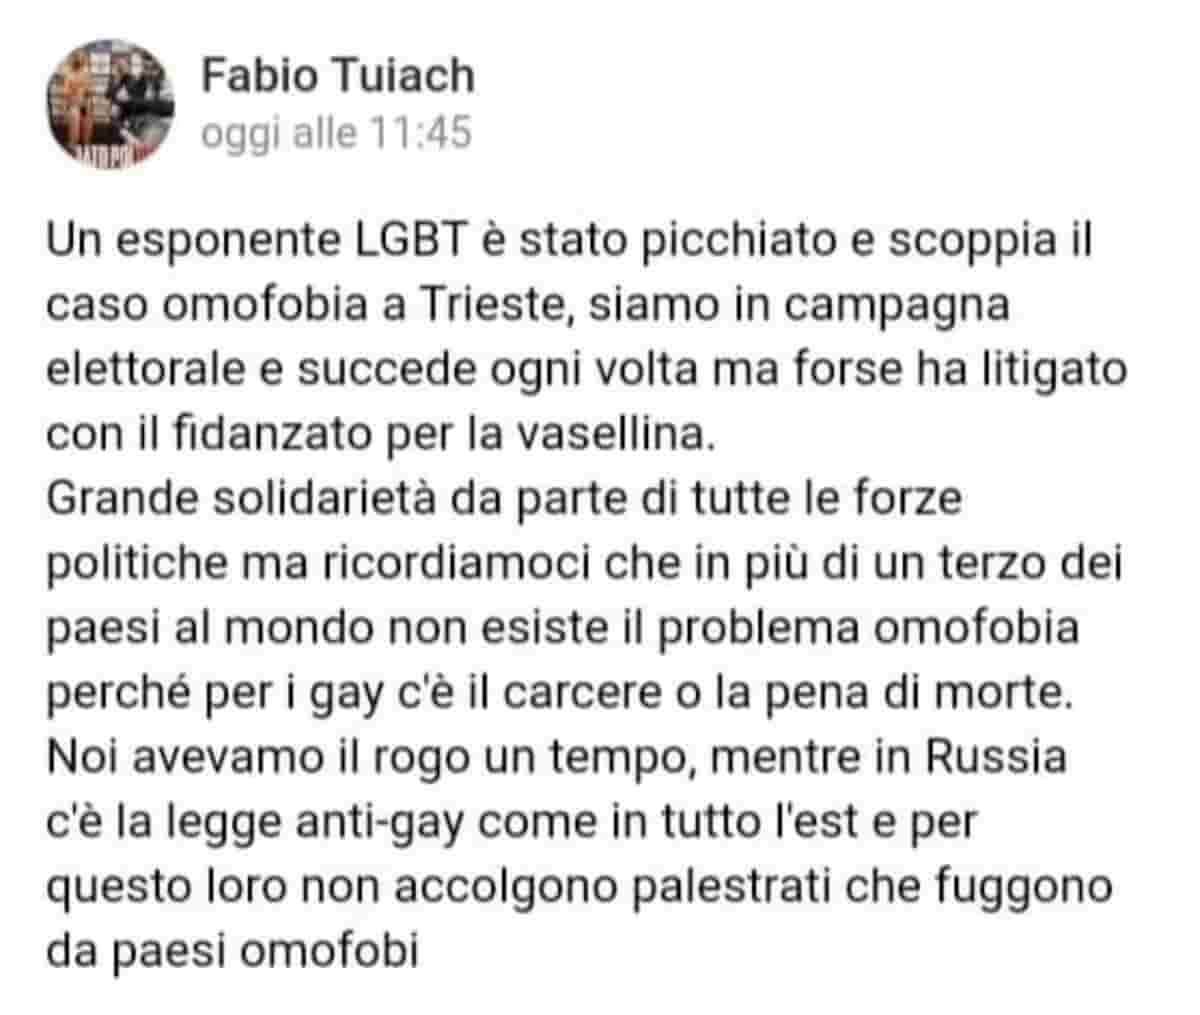 Fabio Tuiach sull'aggressione omofoba ad Antonio Parisi: "Forse ha litigato con il fidanzato per la vaselina"